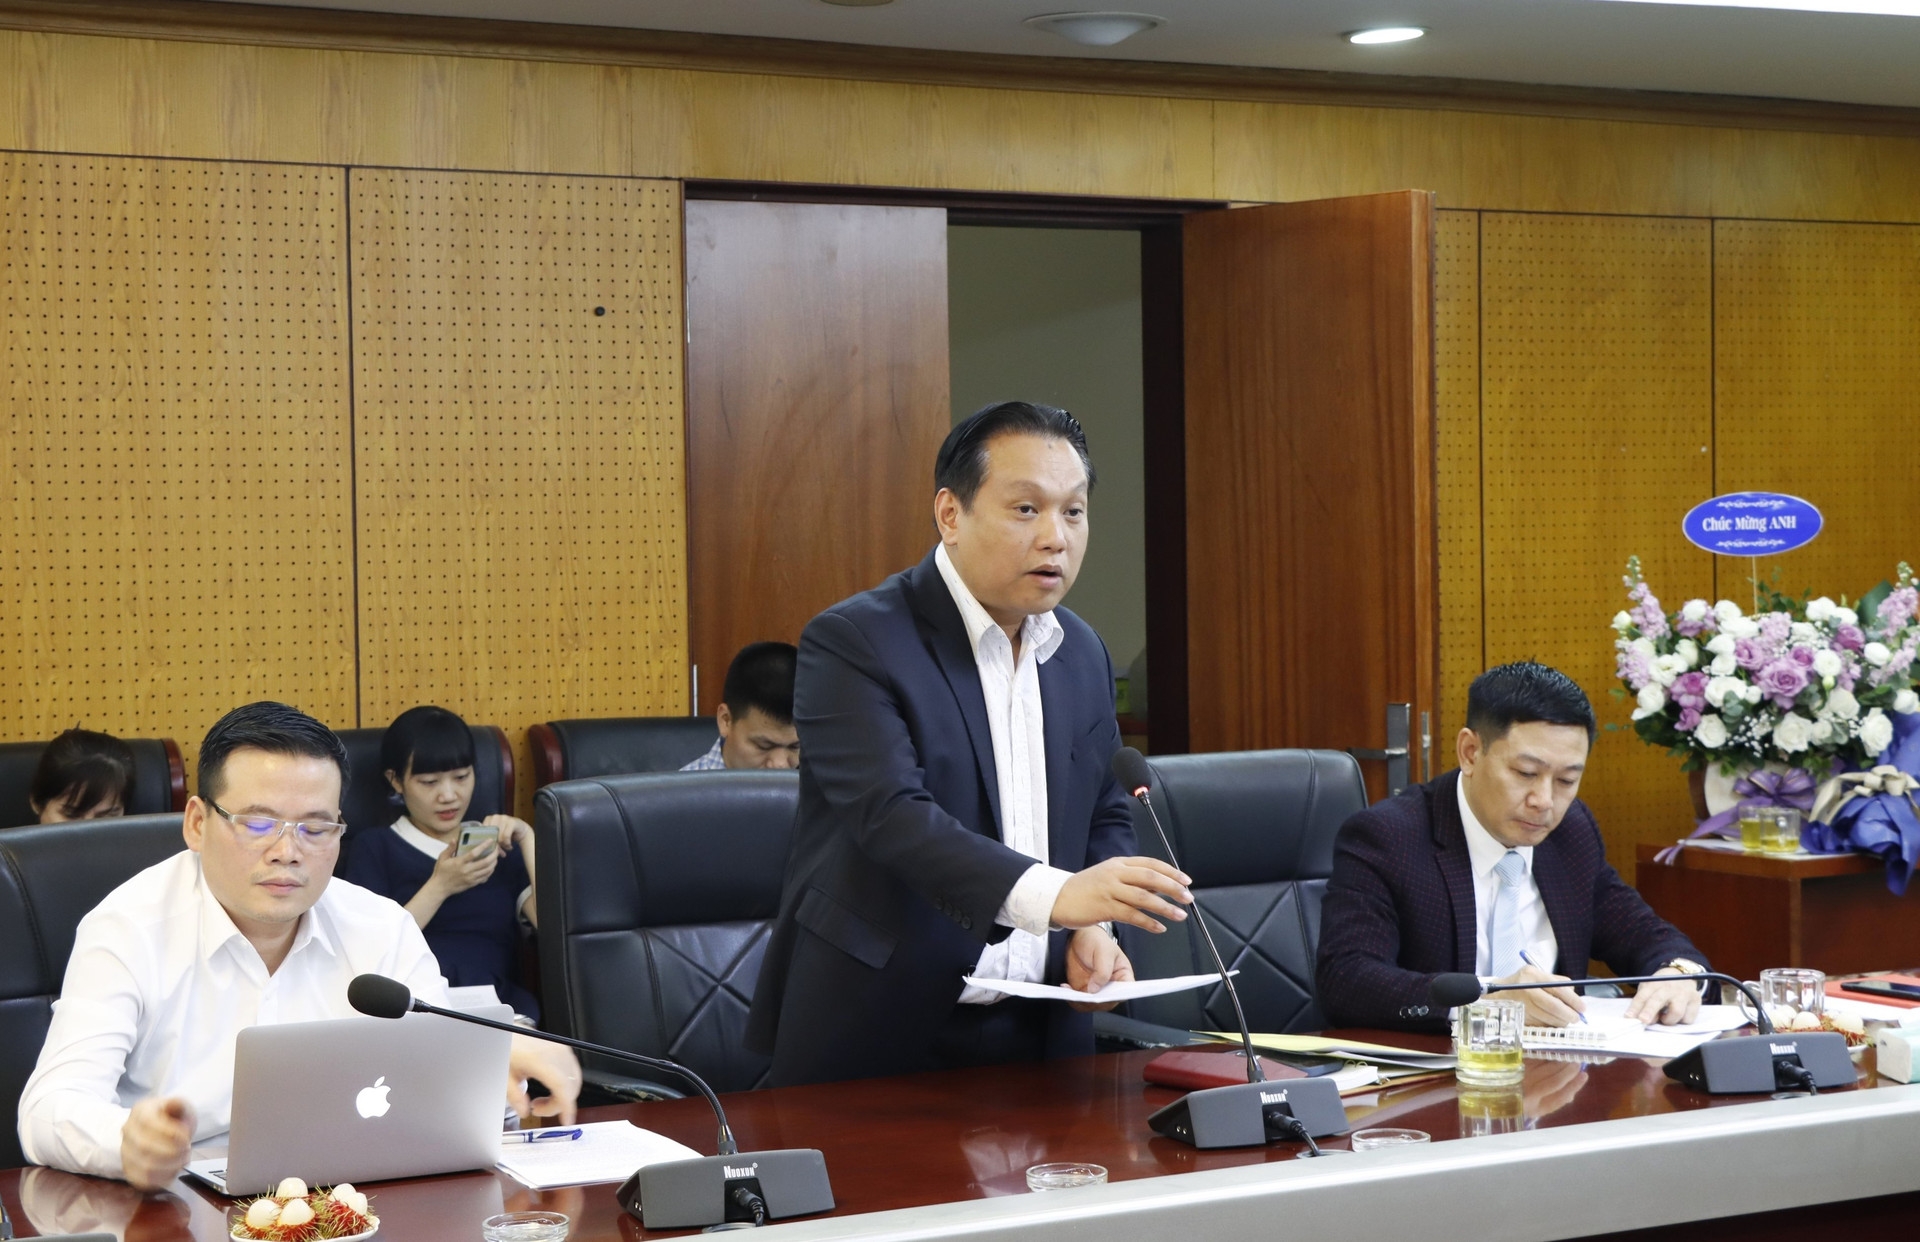 Ông Nguyễn Hưng Thịnh, Vụ trưởng Vụ Môi trường báo cáo tại cuộc họp. Ảnh sưu tầm